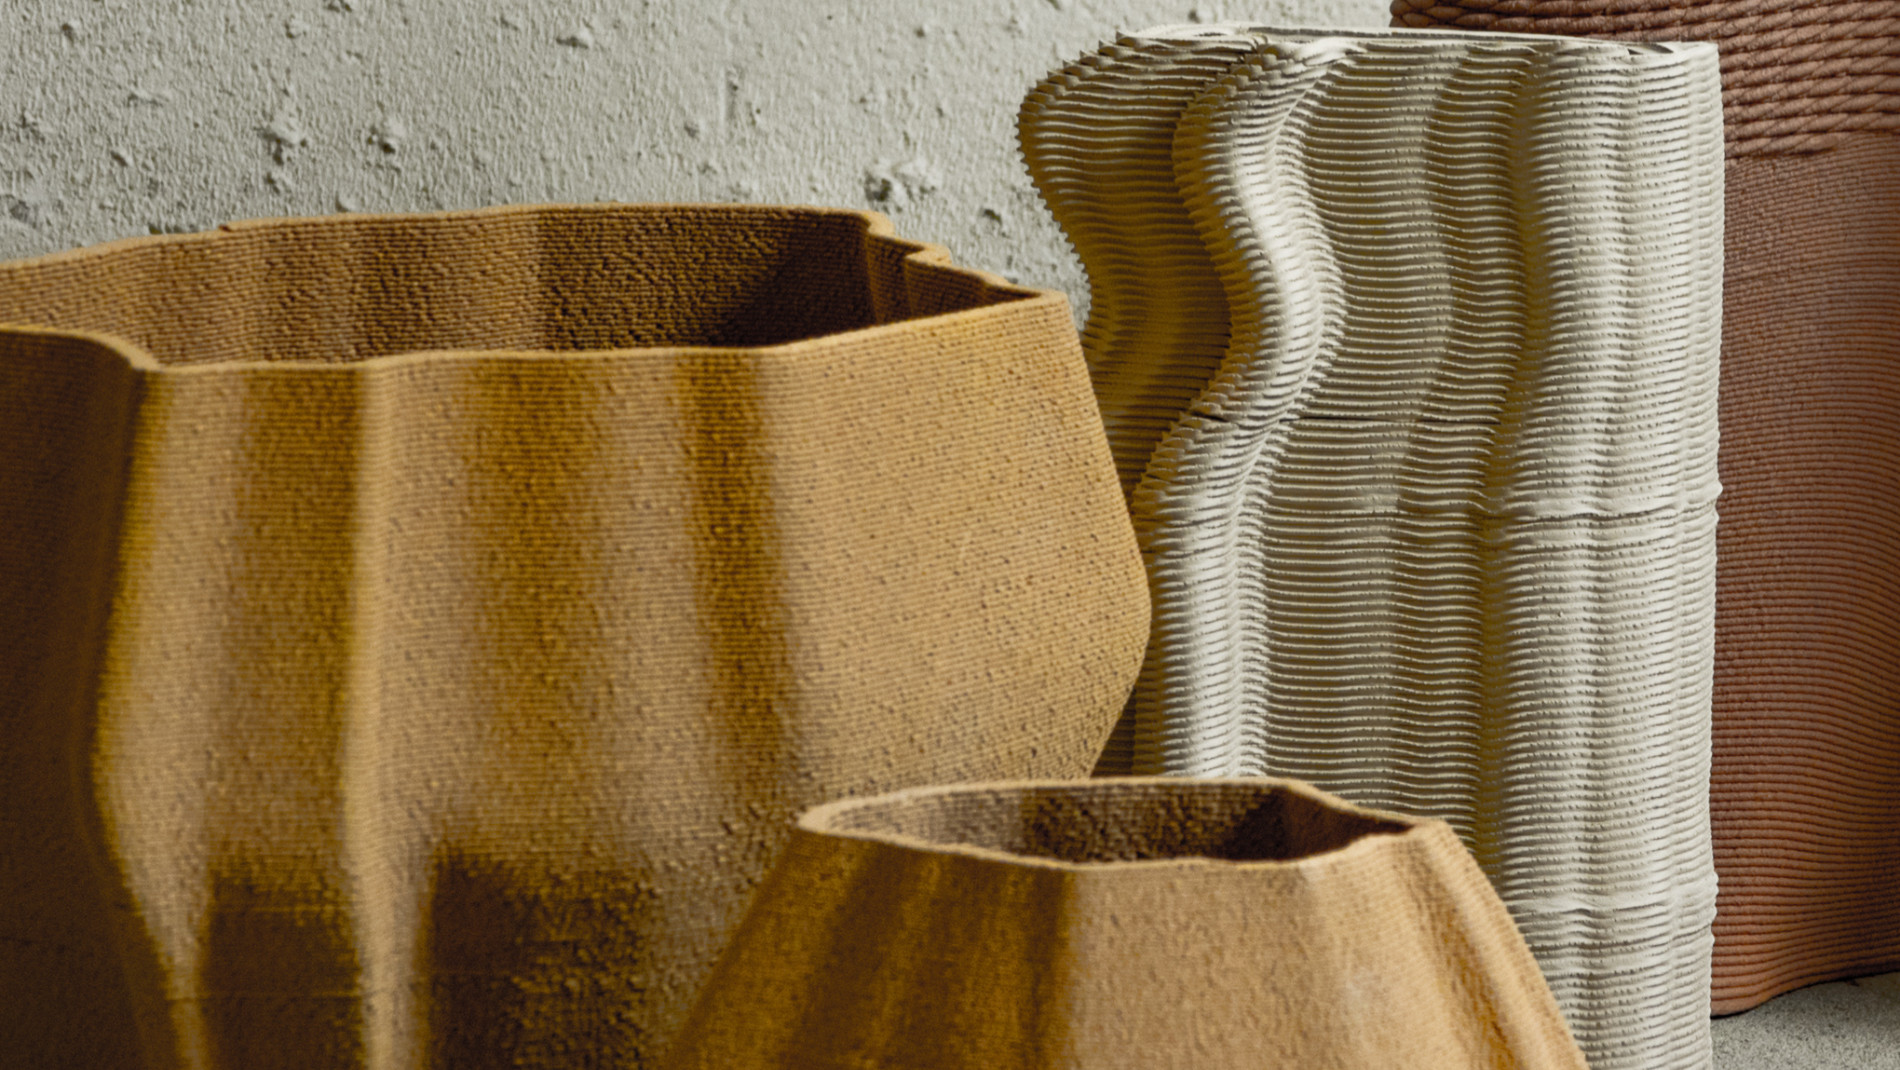 Valdez: Vasen, die im 3D-Druckverfahren hergestellt wurden